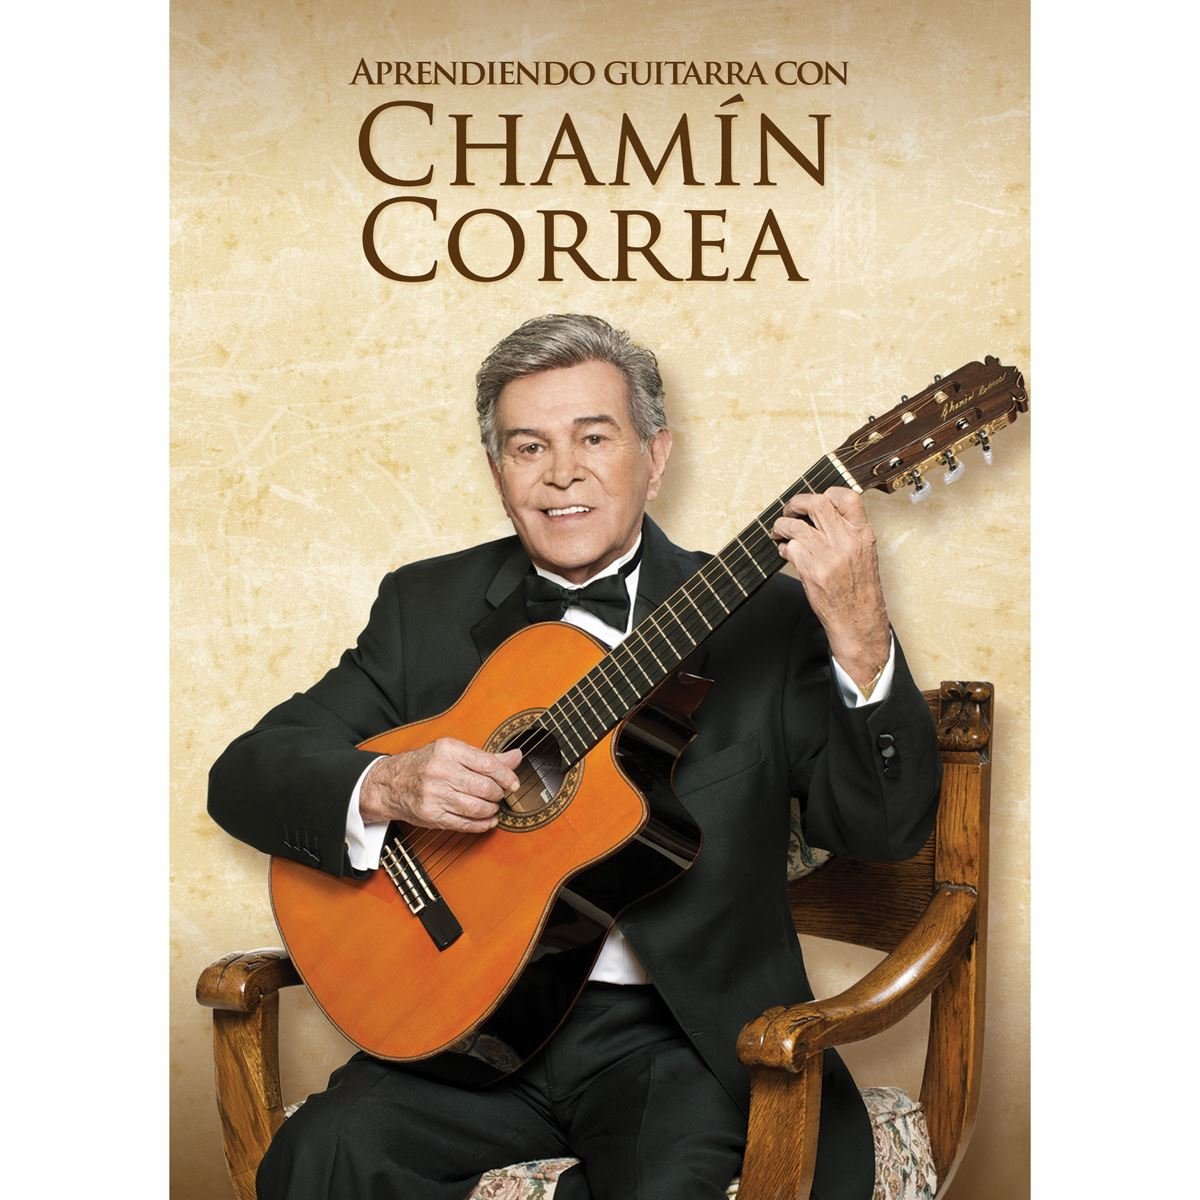 DVD Aprendiendo Guitarra con Chamín Correa